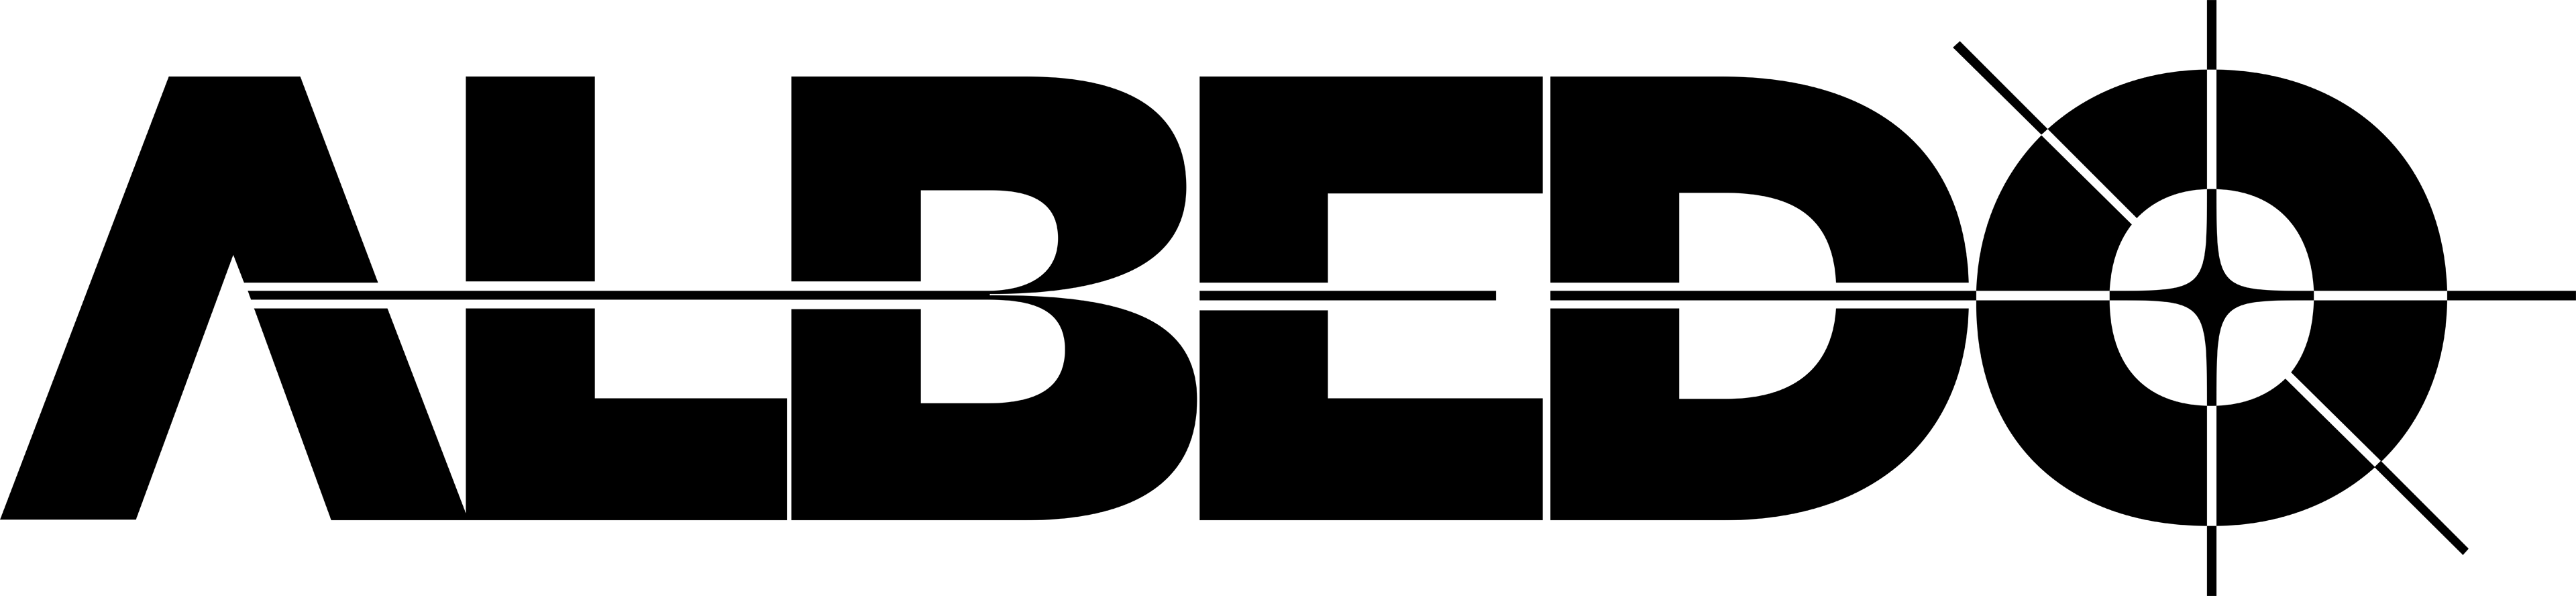 Albedo logo black transparent 4k